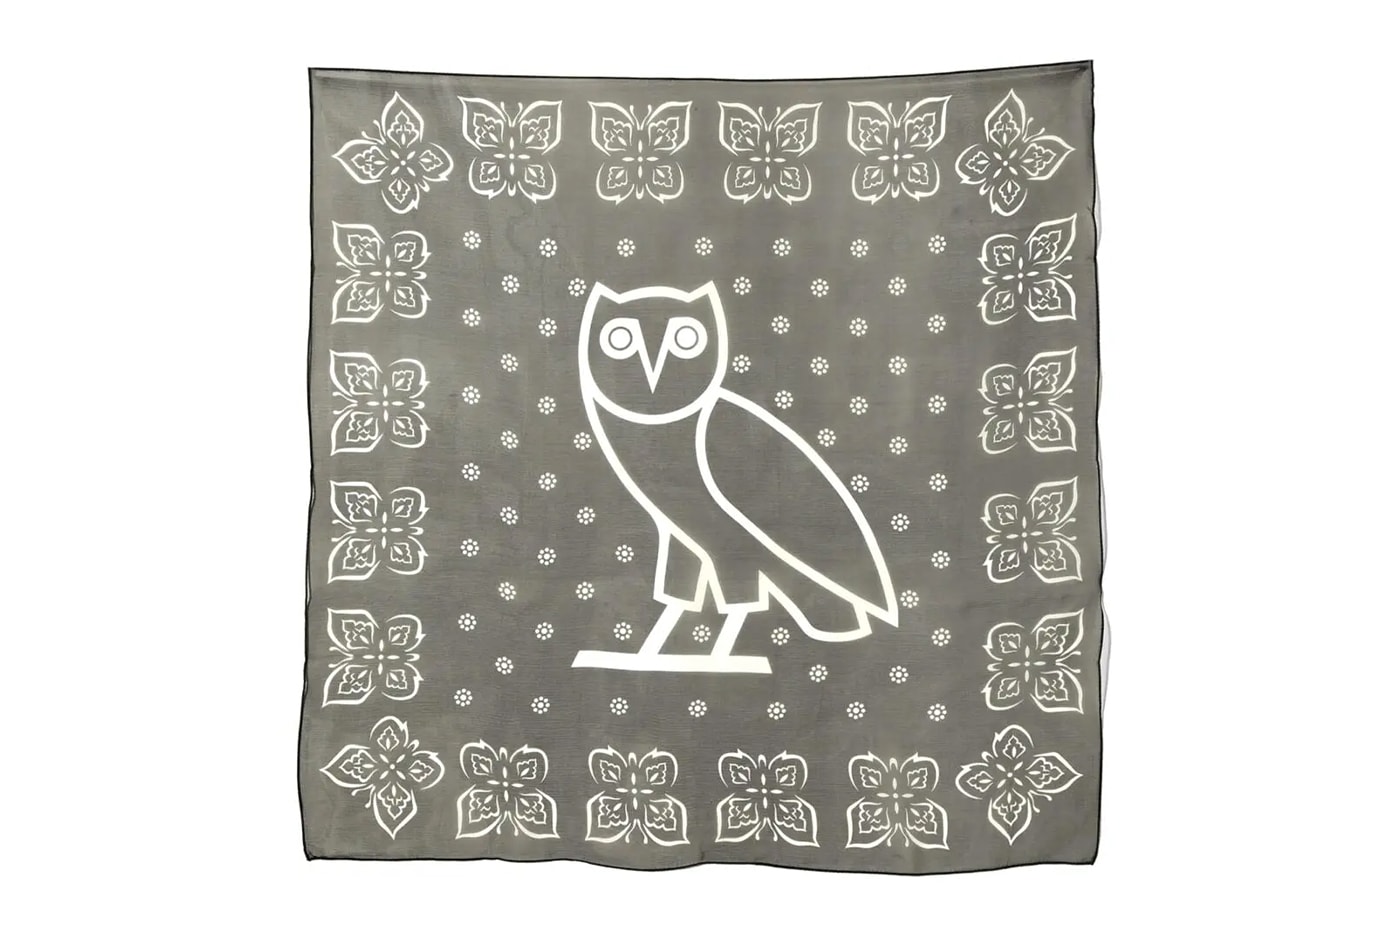 ニードルズとドレイク手掛けるOVOのコラボコレクションが発売 NEEDLES and OVO Drop First Ever Collaboration drake owl butterfly tracksuits t-shirt bandana accessories